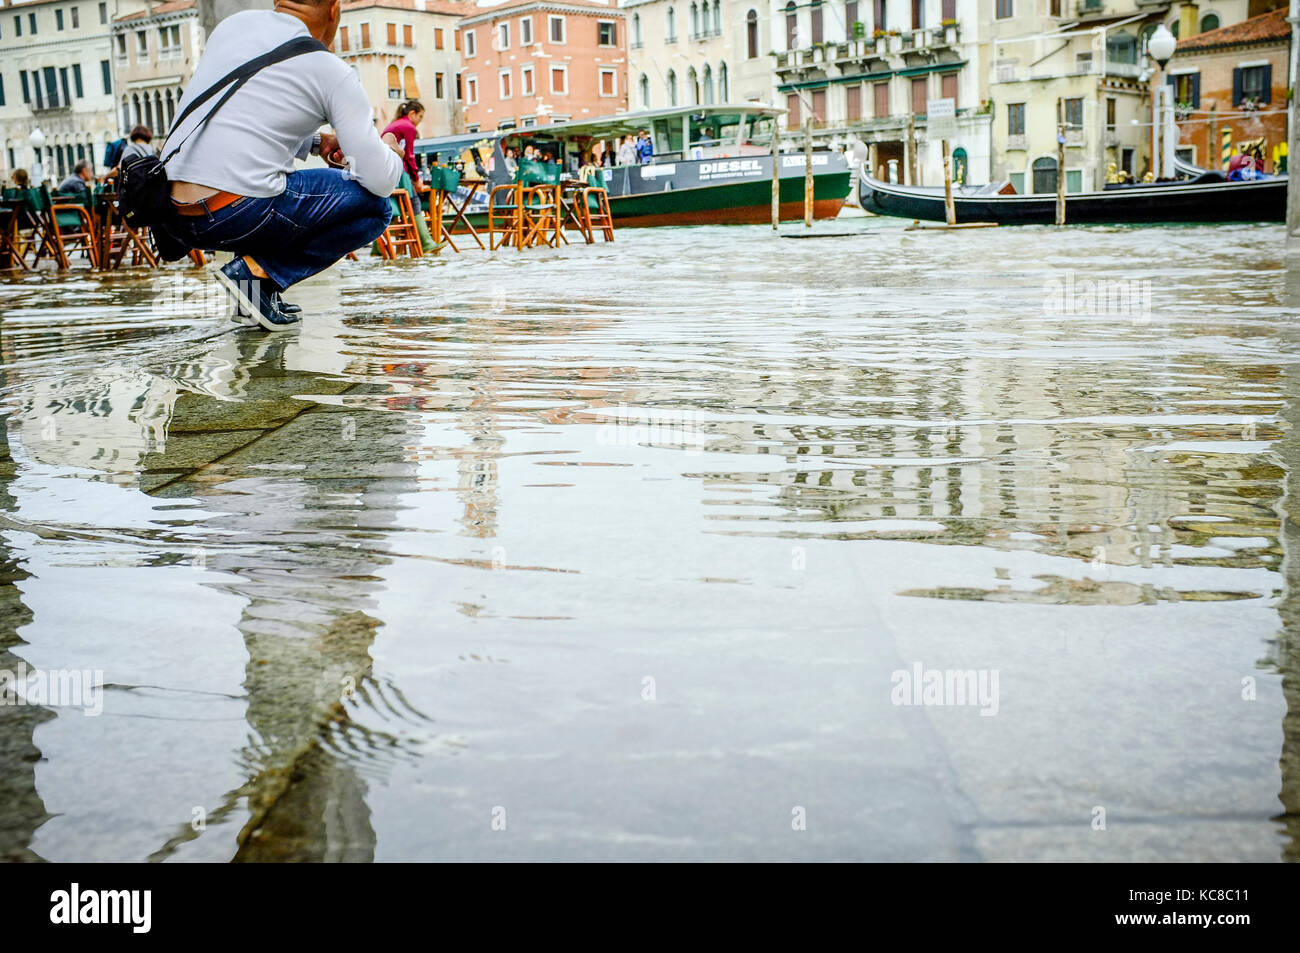 Un photographe s'agenouille pour se faire un bon coup de l'acqua alta, ou l'injection de l'eau élevée, à Venise Banque D'Images